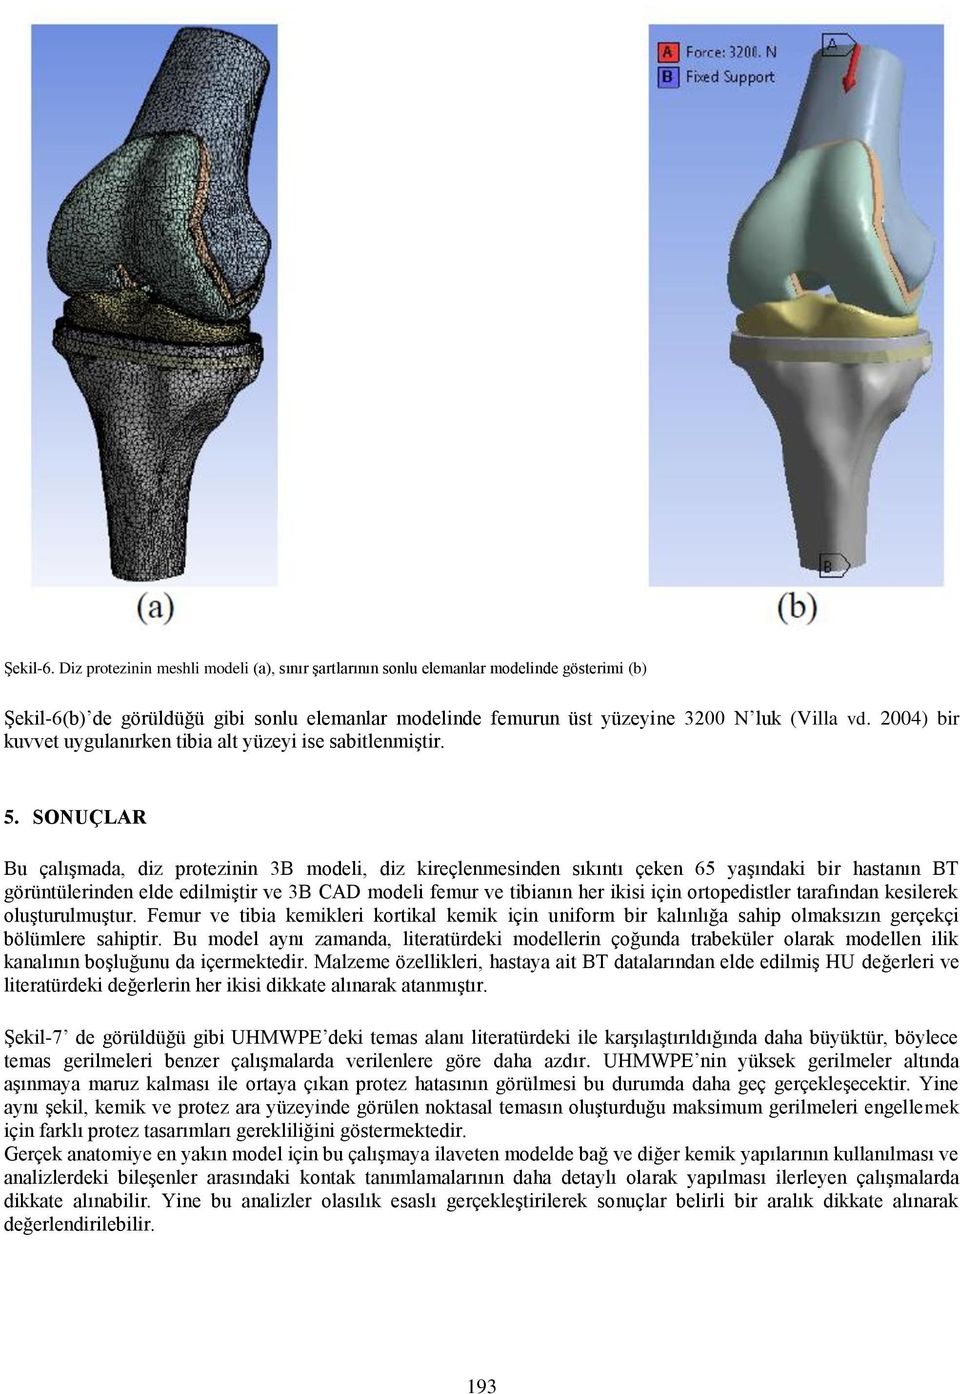 SONUÇLAR Bu çalışmada, diz protezinin 3B modeli, diz kireçlenmesinden sıkıntı çeken 65 yaşındaki bir hastanın BT görüntülerinden elde edilmiştir ve 3B CAD modeli femur ve tibianın her ikisi için